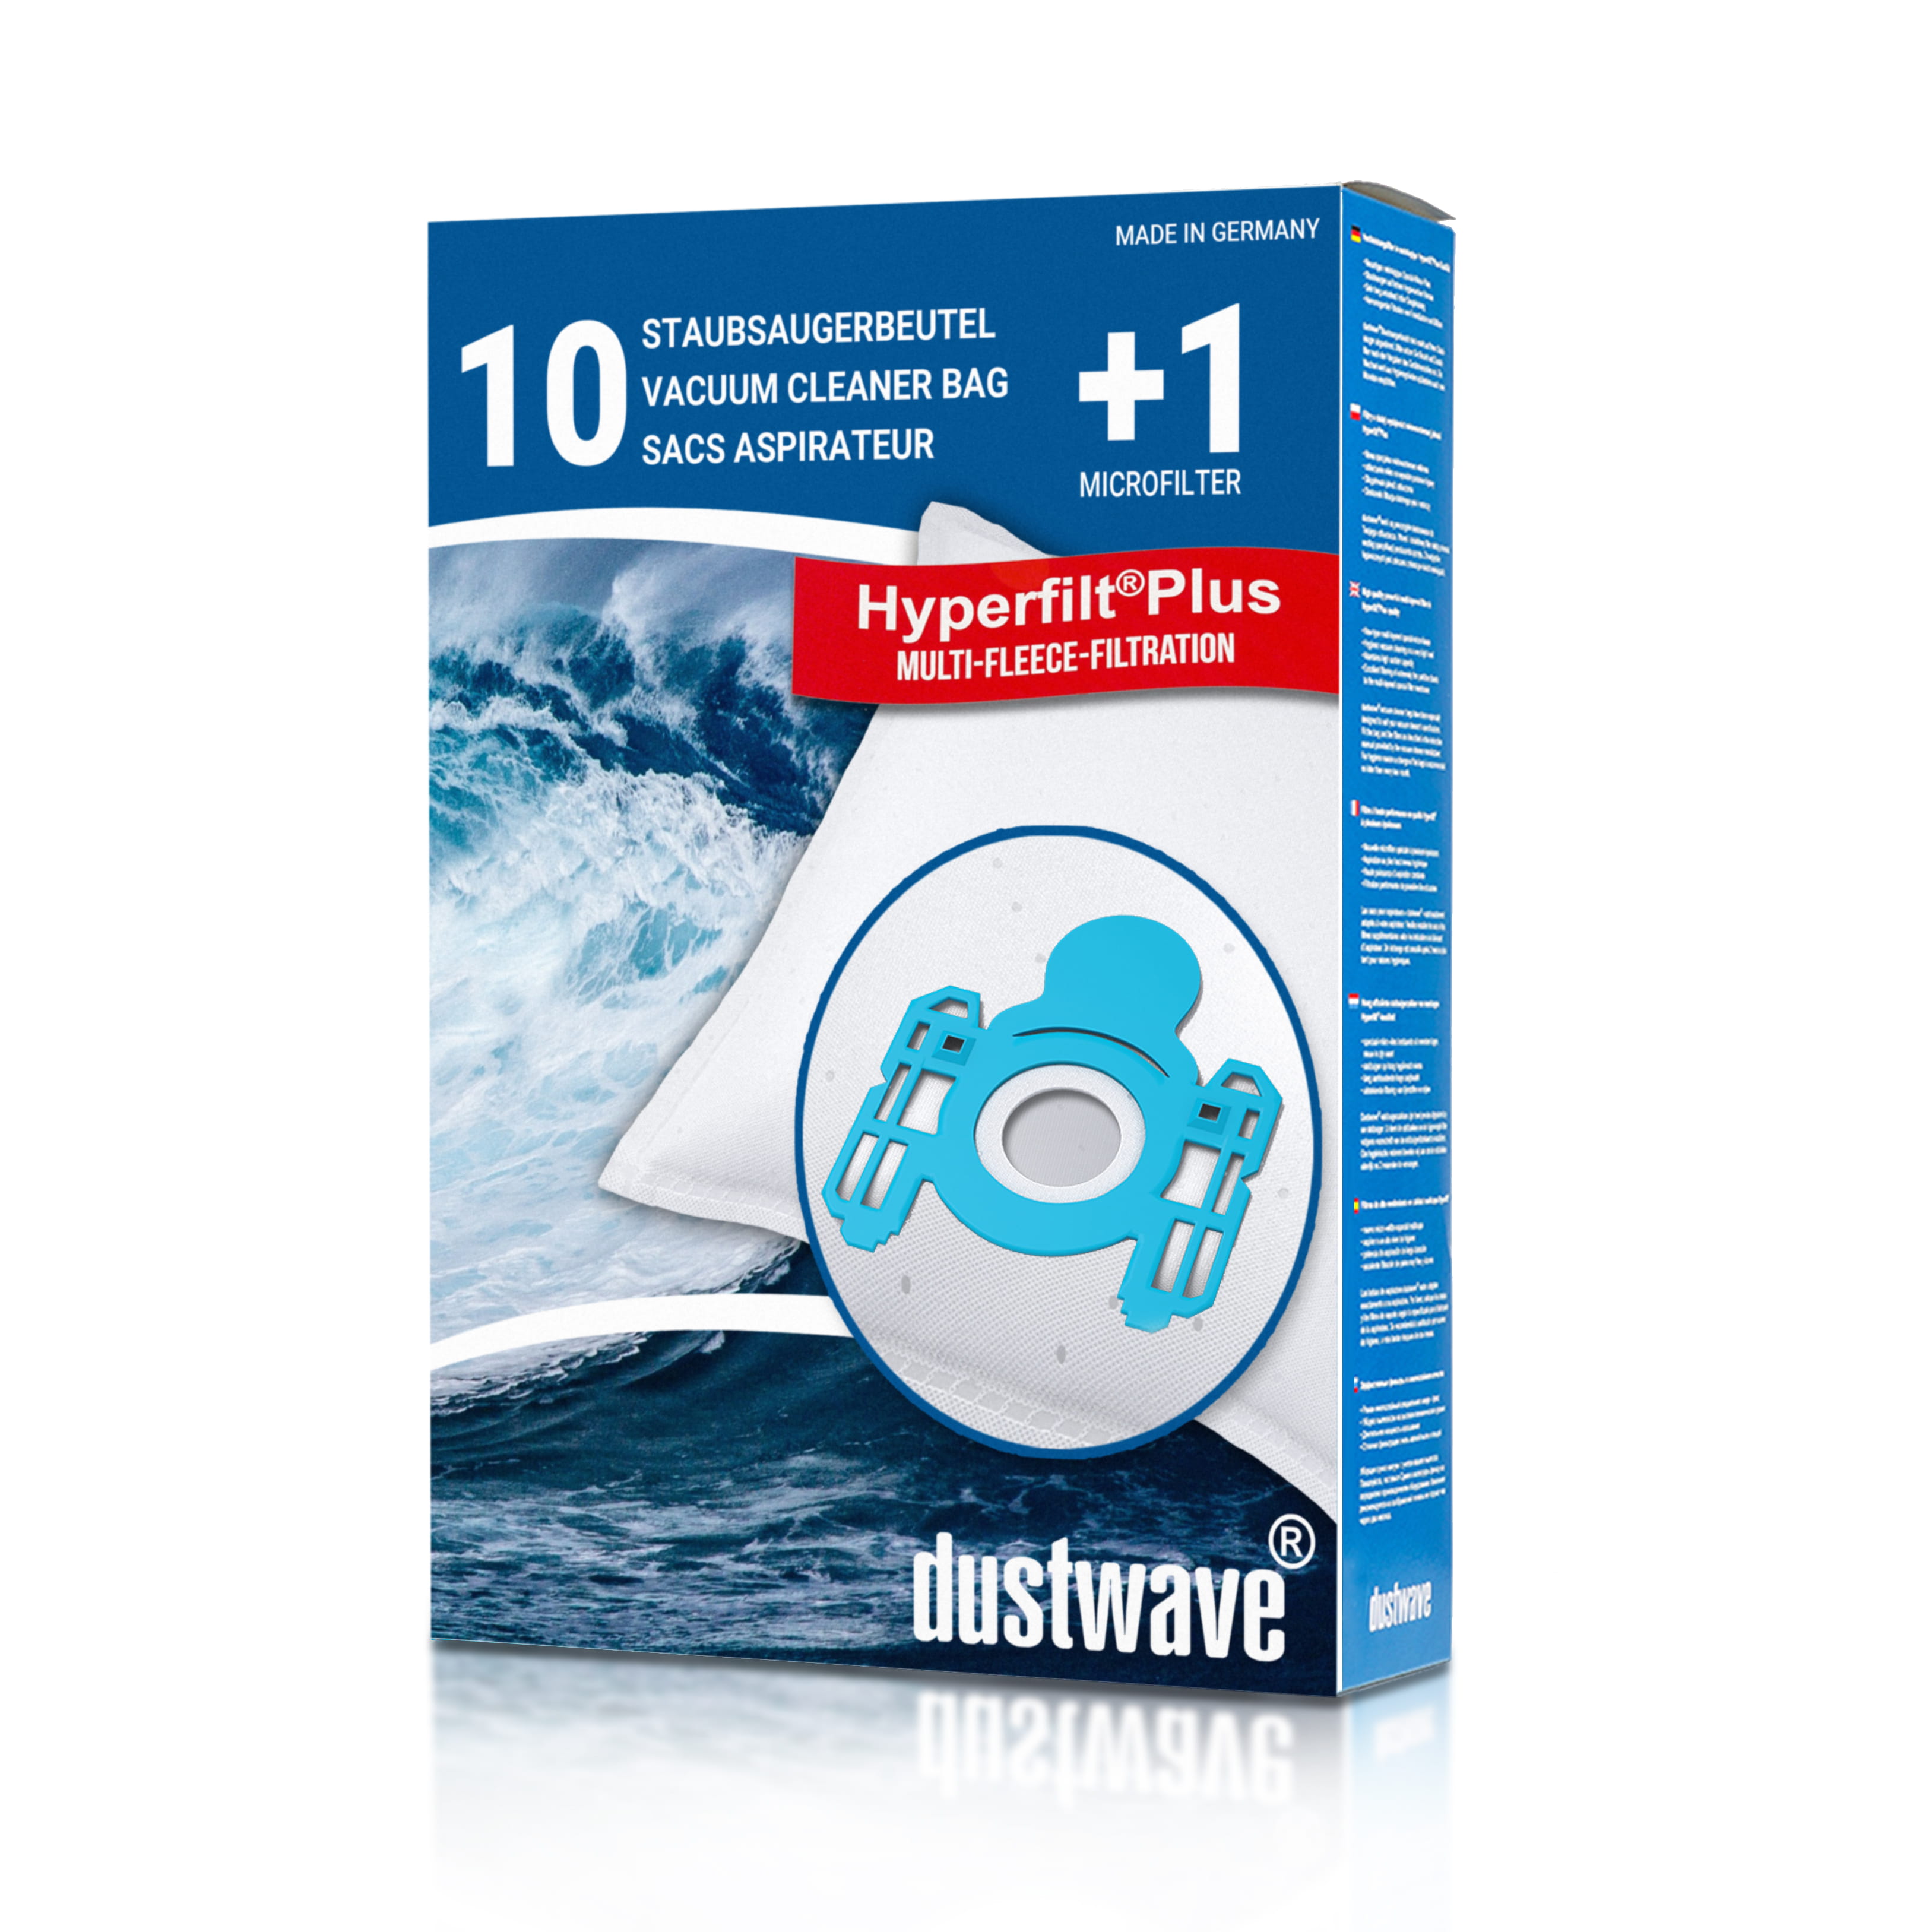 Dustwave® 10 Staubsaugerbeutel für AEG Vampyr CE K 4200 - hocheffizient, mehrlagiges Mikrovlies mit Hygieneverschluss - Made in Germany